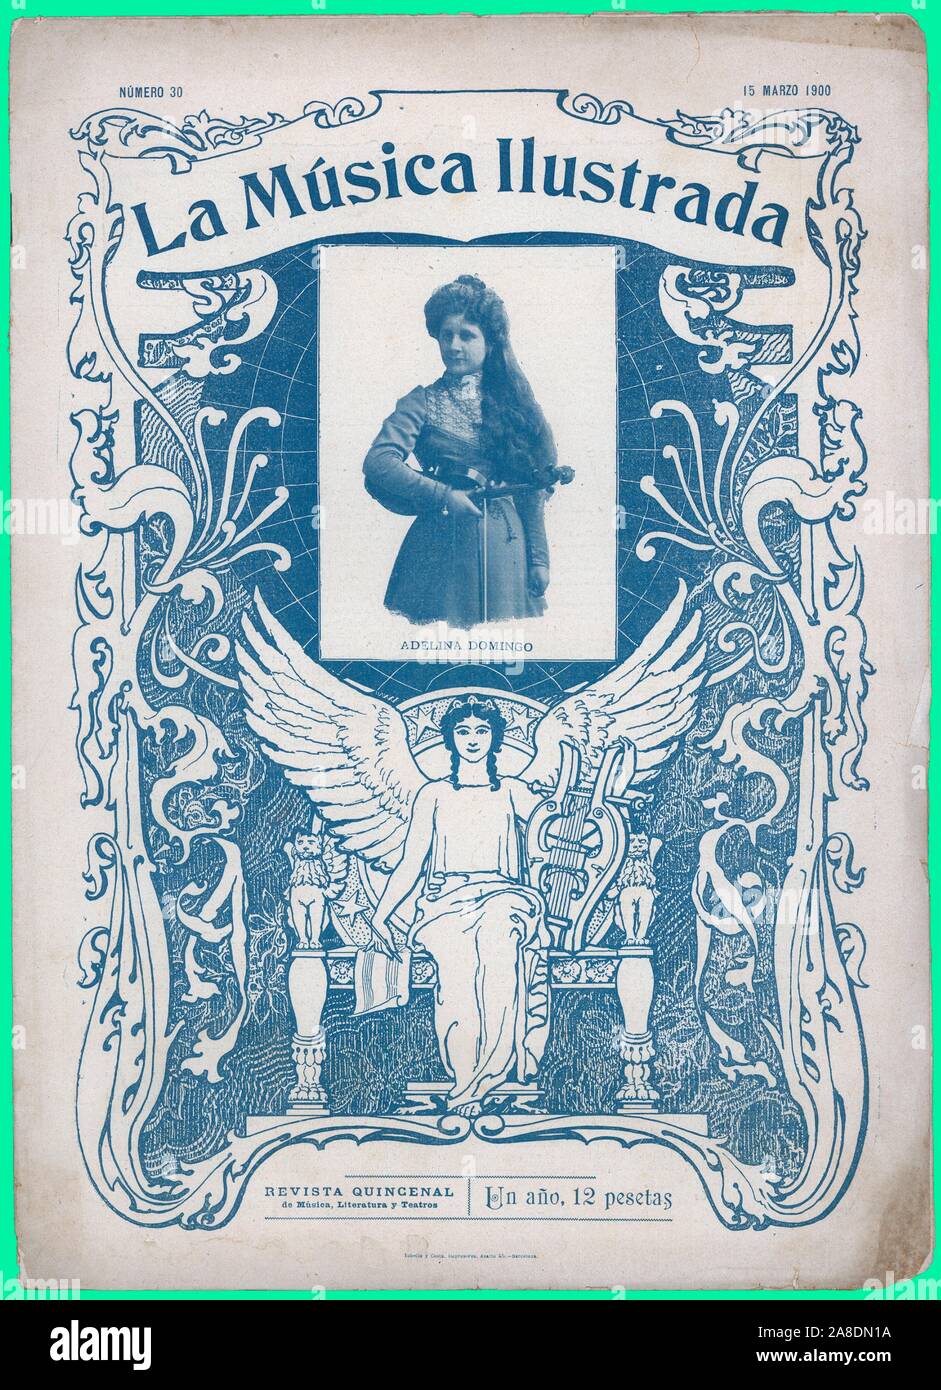 Portada de la revista La Música Ilustrada, editada en Barcelona, marzo de 1900. Adelina Domingo. Stock Photo